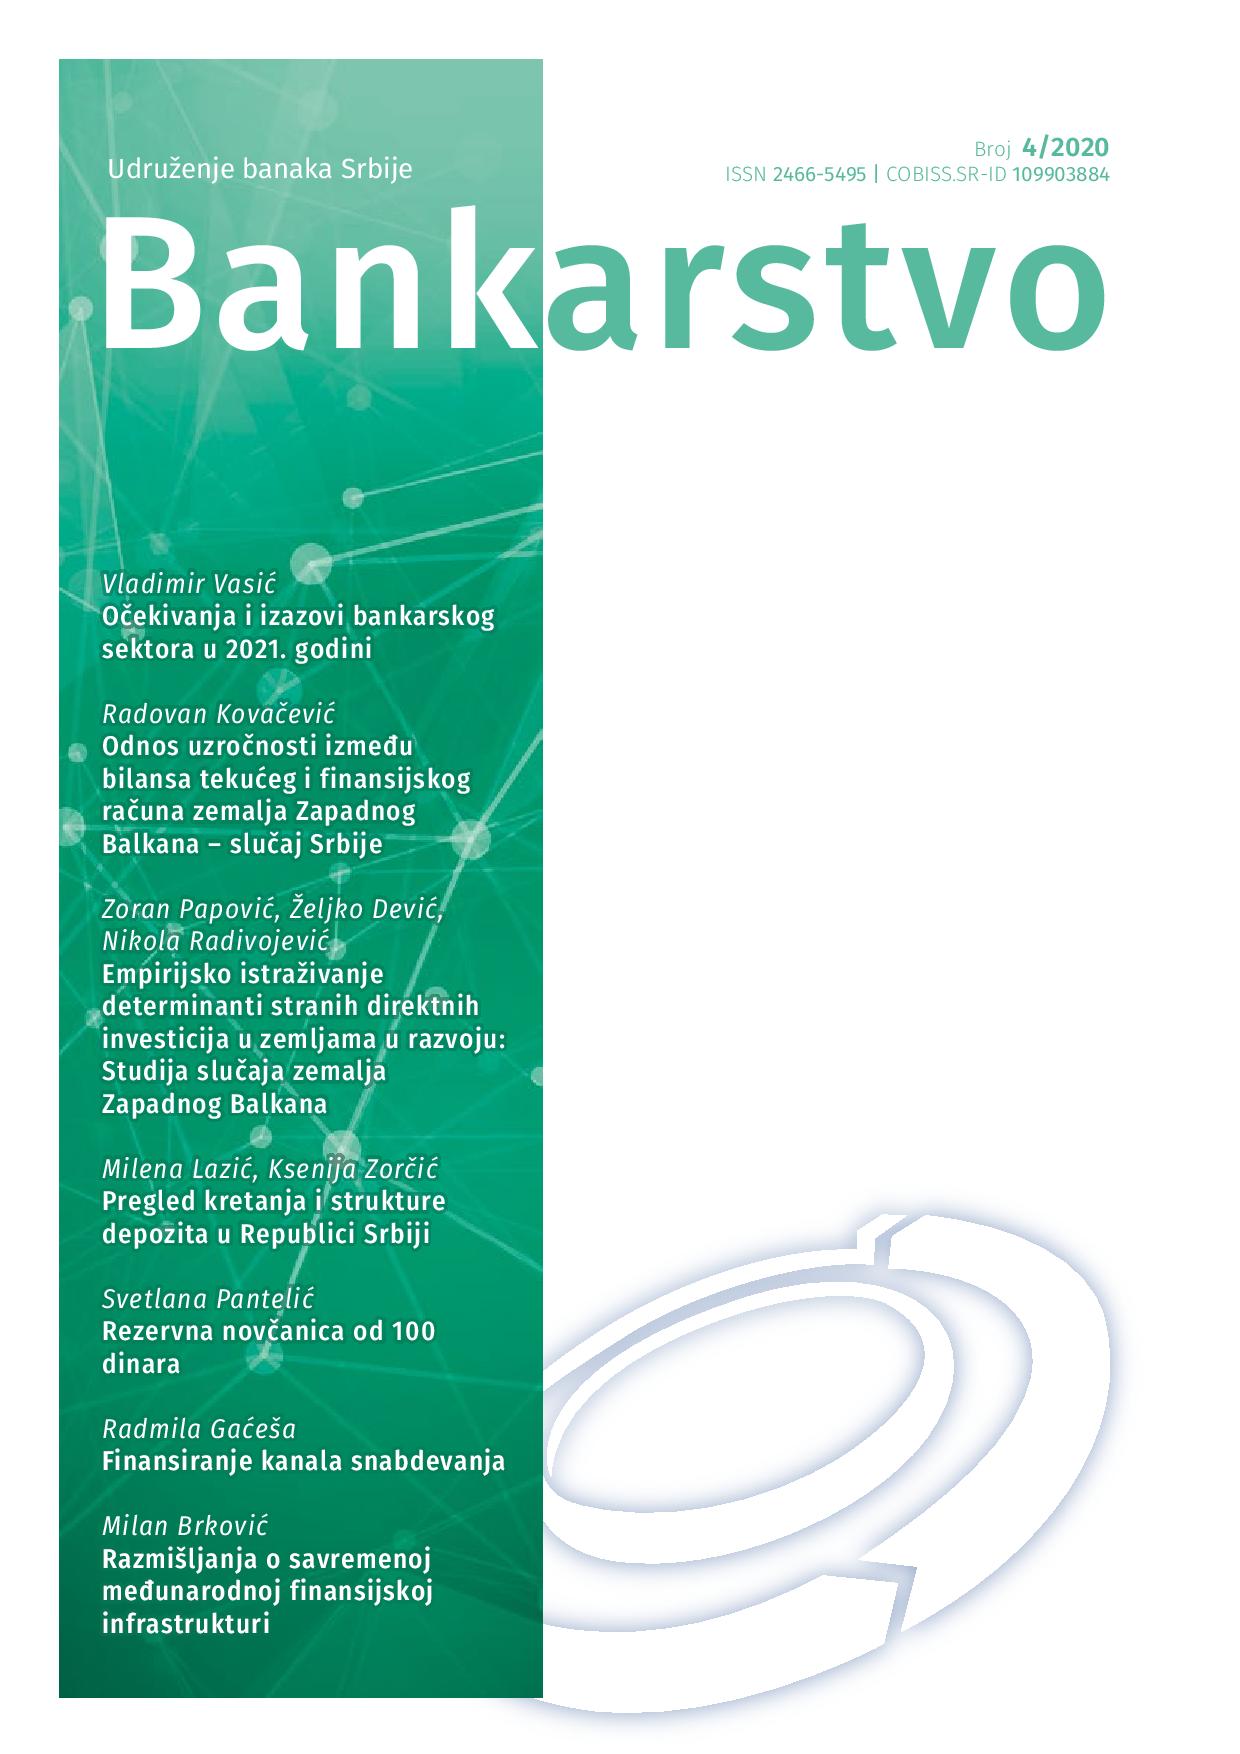 Odnos uzročnosti između bilansa tekućeg i finansijskog računa zemalja Zapadnog Balkana – slučaj Srbije